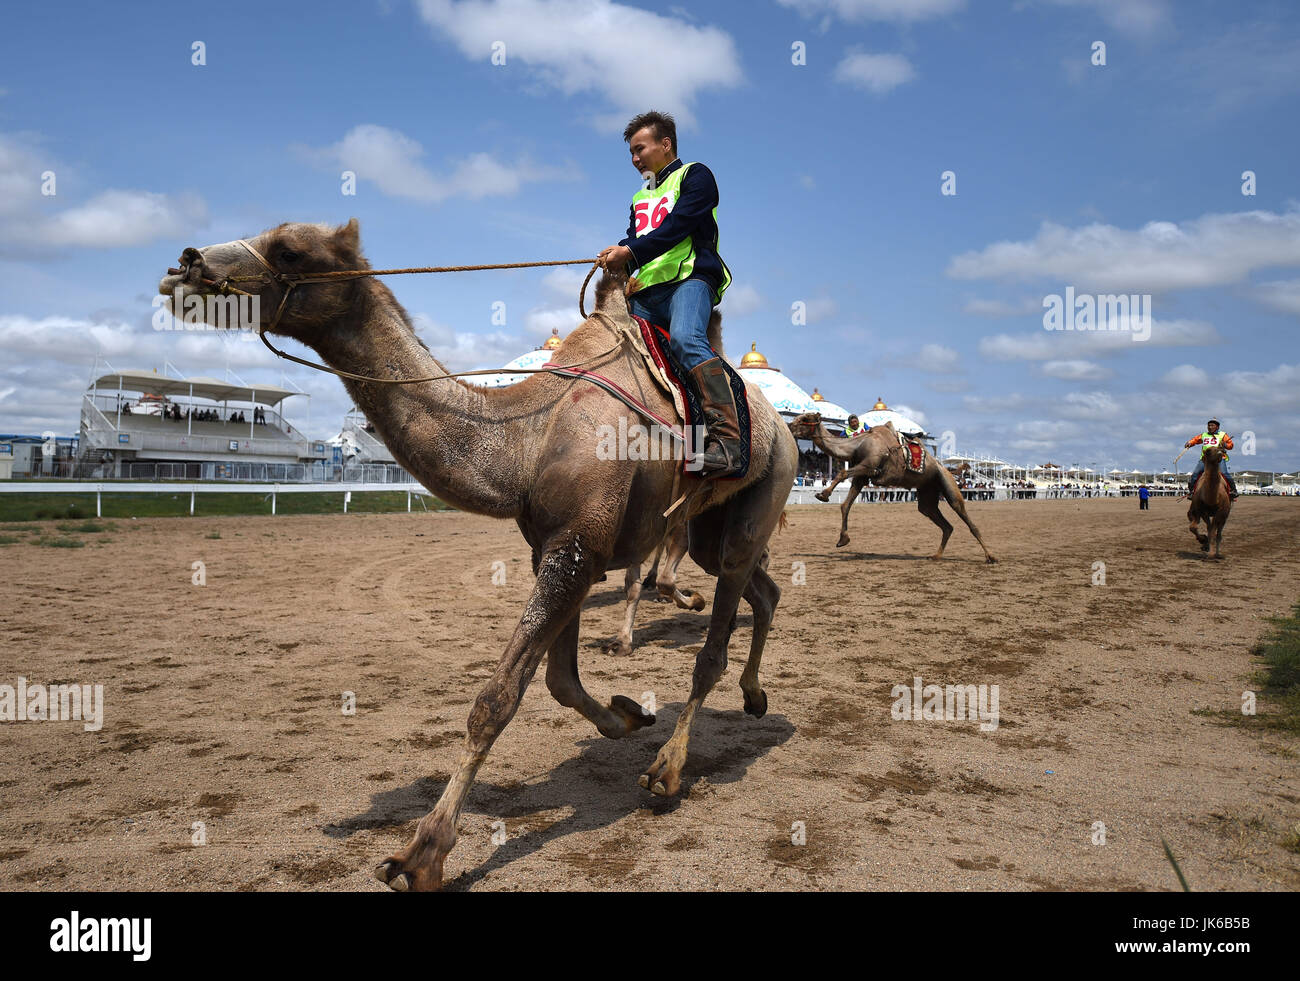 La Mongolie intérieure. 22 juillet, 2017. Un homme est en concurrence pendant les courses de chameaux dans Muminggan Darhan United Banner, Chine du nord, région autonome de Mongolie intérieure. Chaque année une foire Nadam de la bannière a ouvert ici samedi. Les trois jours seront juste mongole ethnique des sports traditionnels, tels que le tir à l'arc, lutte, courses de chevaux, balades à cheval, ainsi que des spectacles de chant et de danse. Nadam, signifiant "entertainment" ou "création" en mongol, est un festival mongol traditionnel dans lequel les gens célébrer les récoltes et prier pour la bonne chance. Source : Xinhua/Alamy Live News Banque D'Images